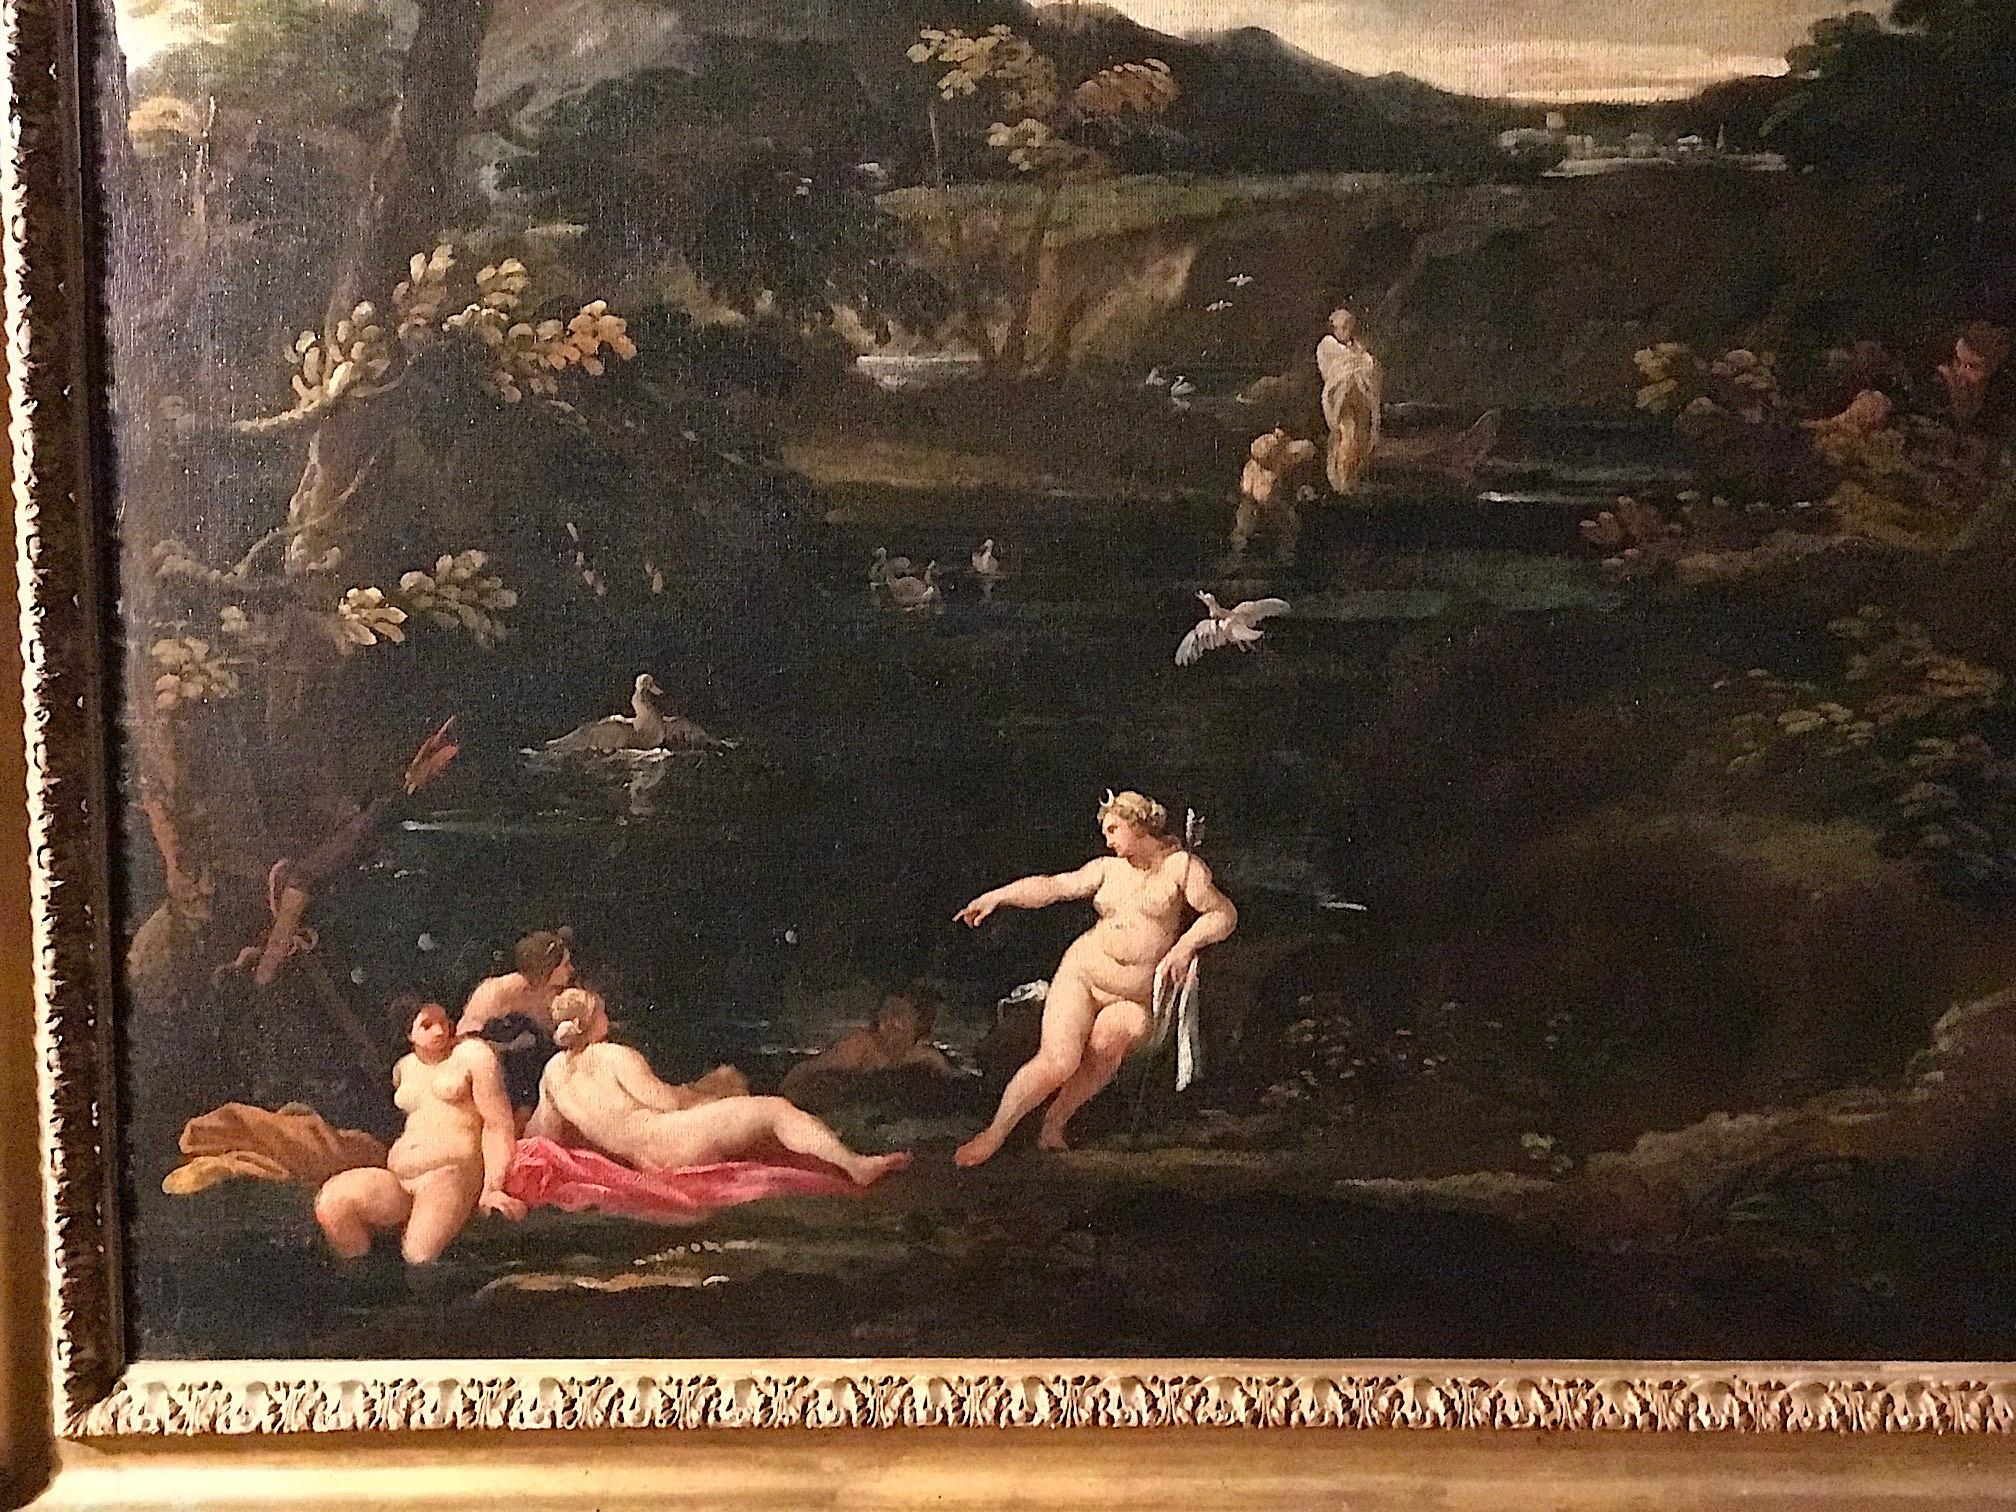  Landschaft mit einer mythologischen Geschichte von Diana und Actaeon 1610 – Painting von Giovanni Battista Viola